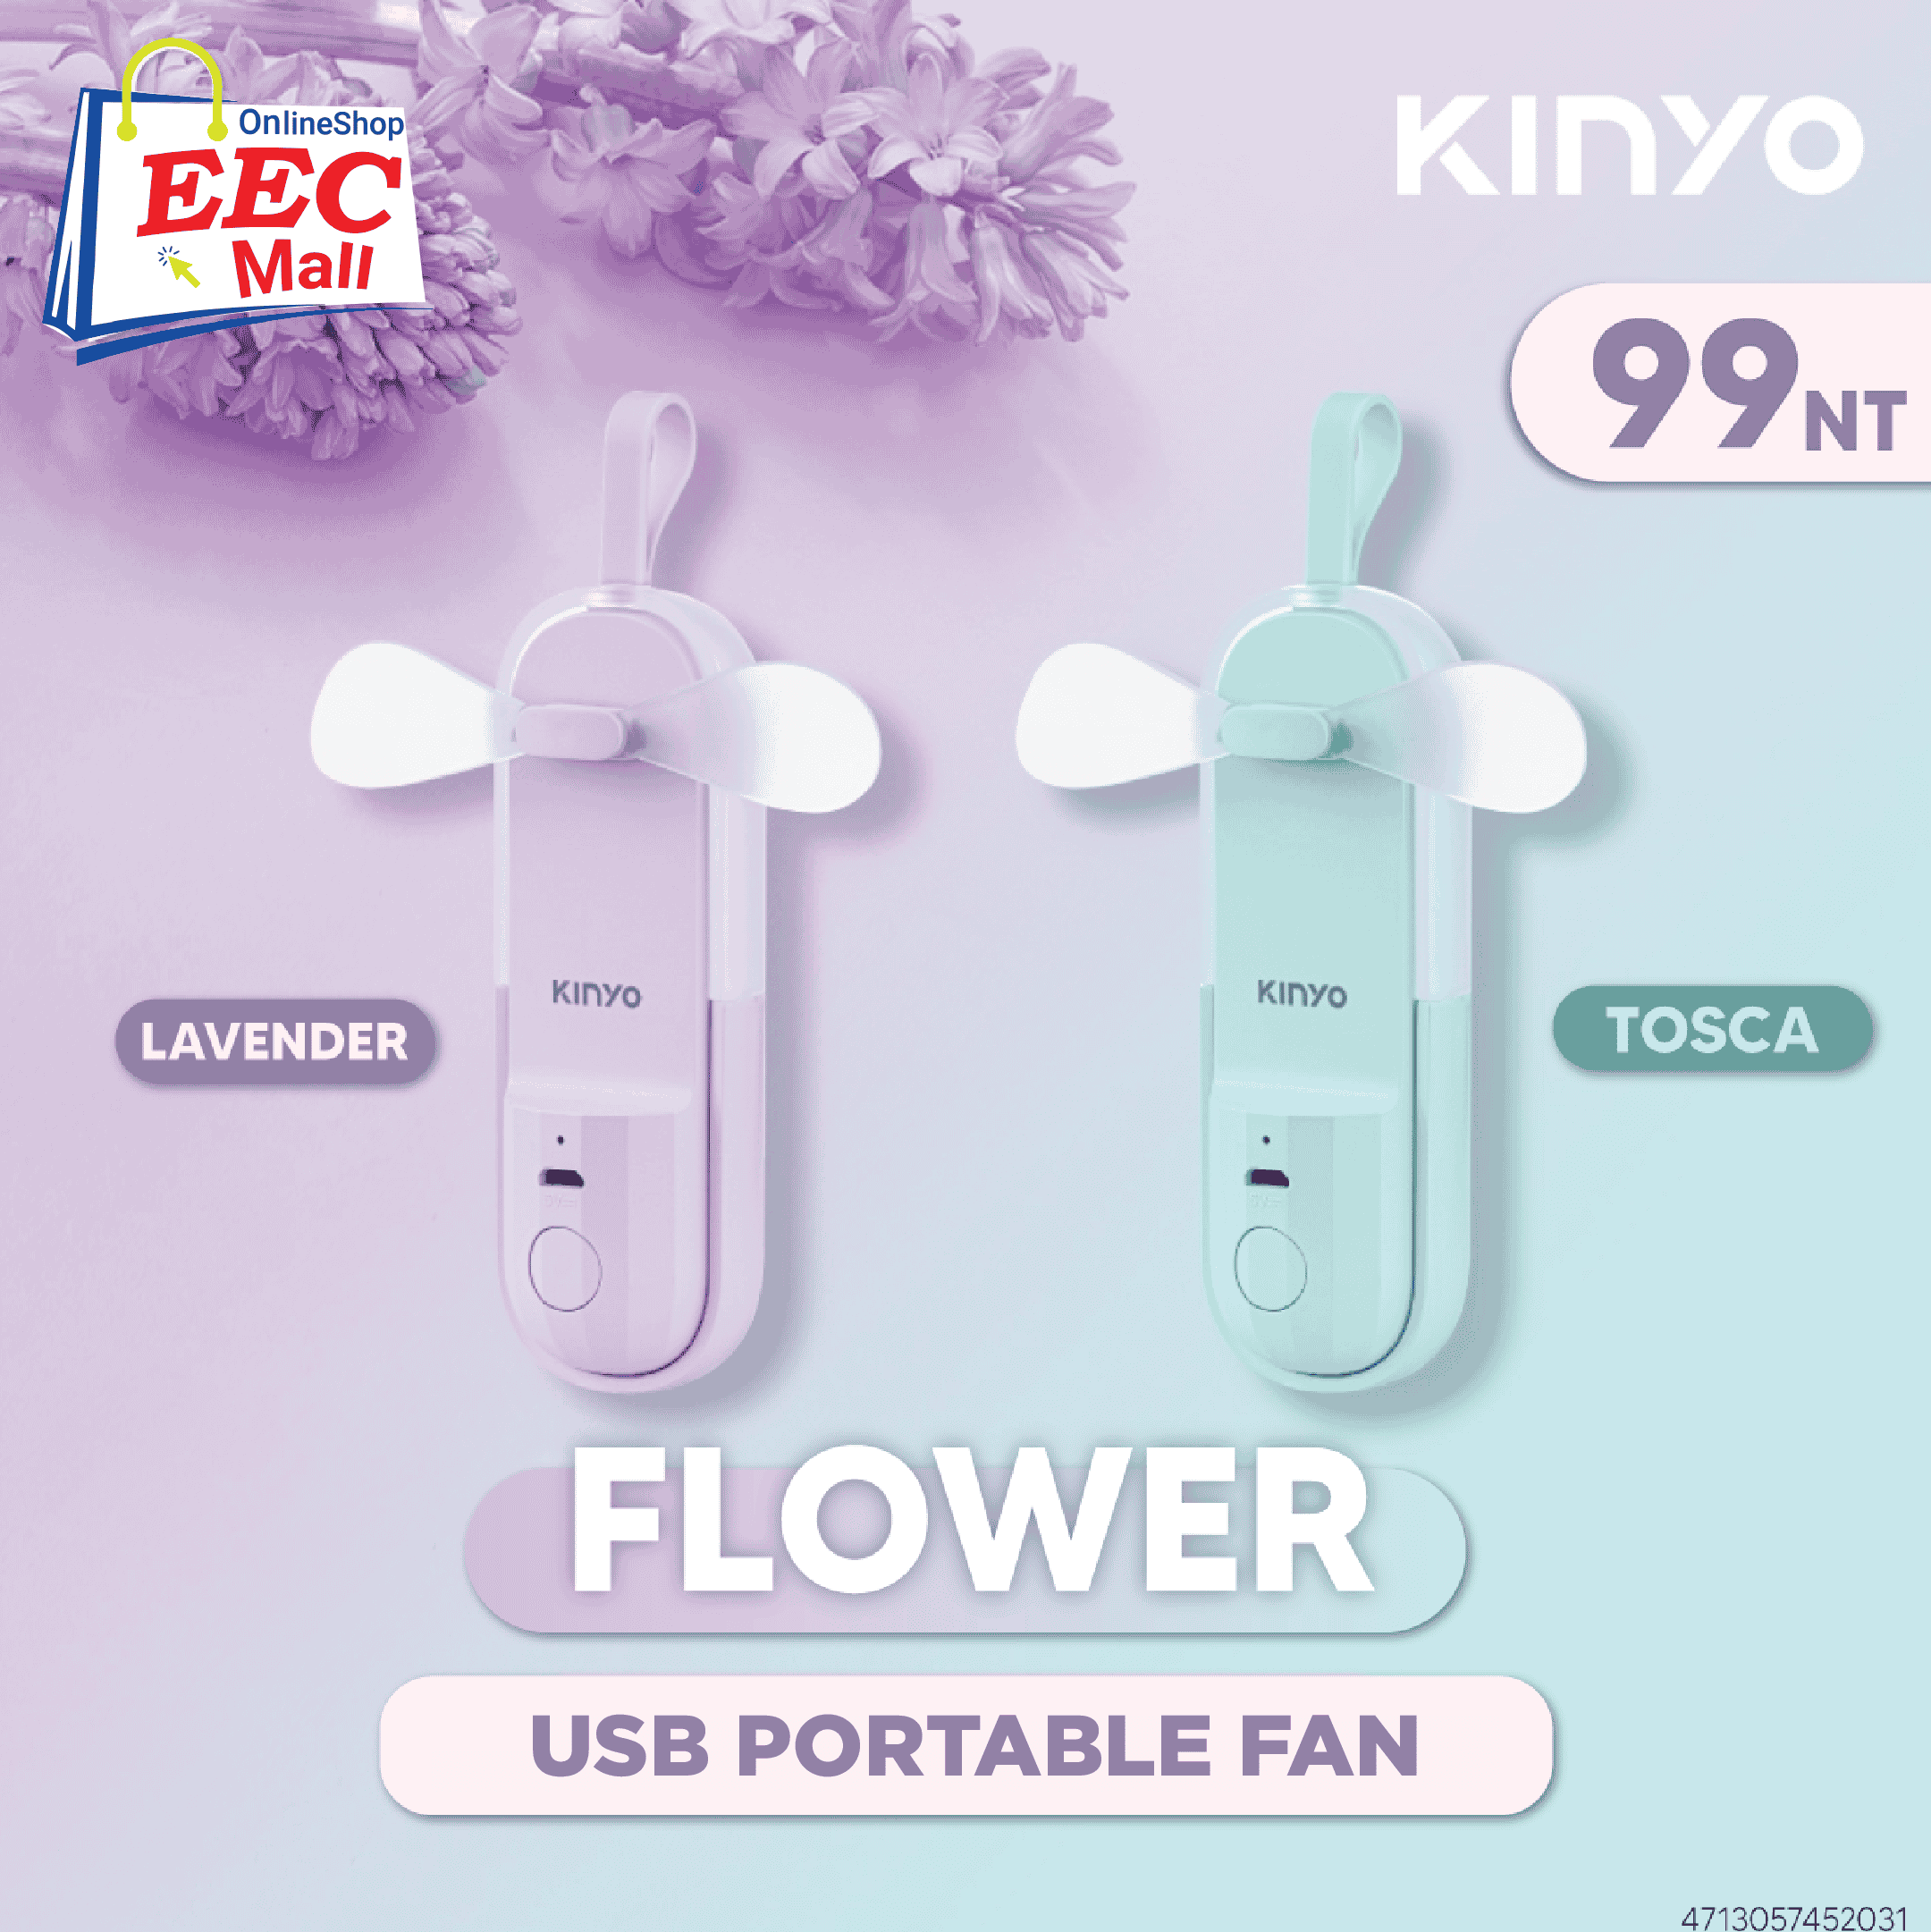 KINYO Flower USB Portable Fan